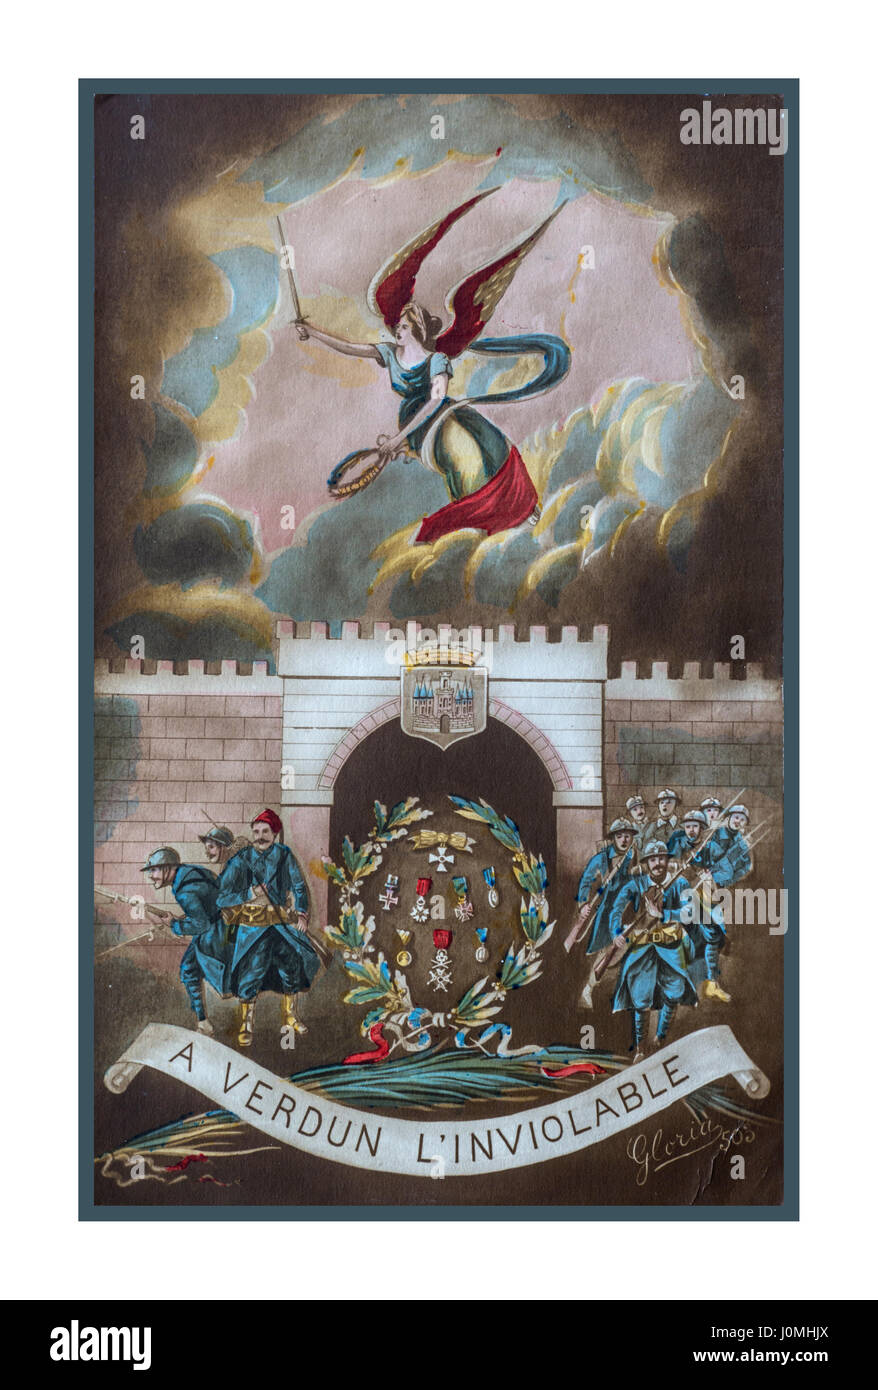 VERDUN WW1 Propaganda Postkarte von der berüchtigten "Battlefront" bei Verdun France an, von der ein Soldat Nachricht senden das Rühren, Verdun ist unantastbar Stockfoto